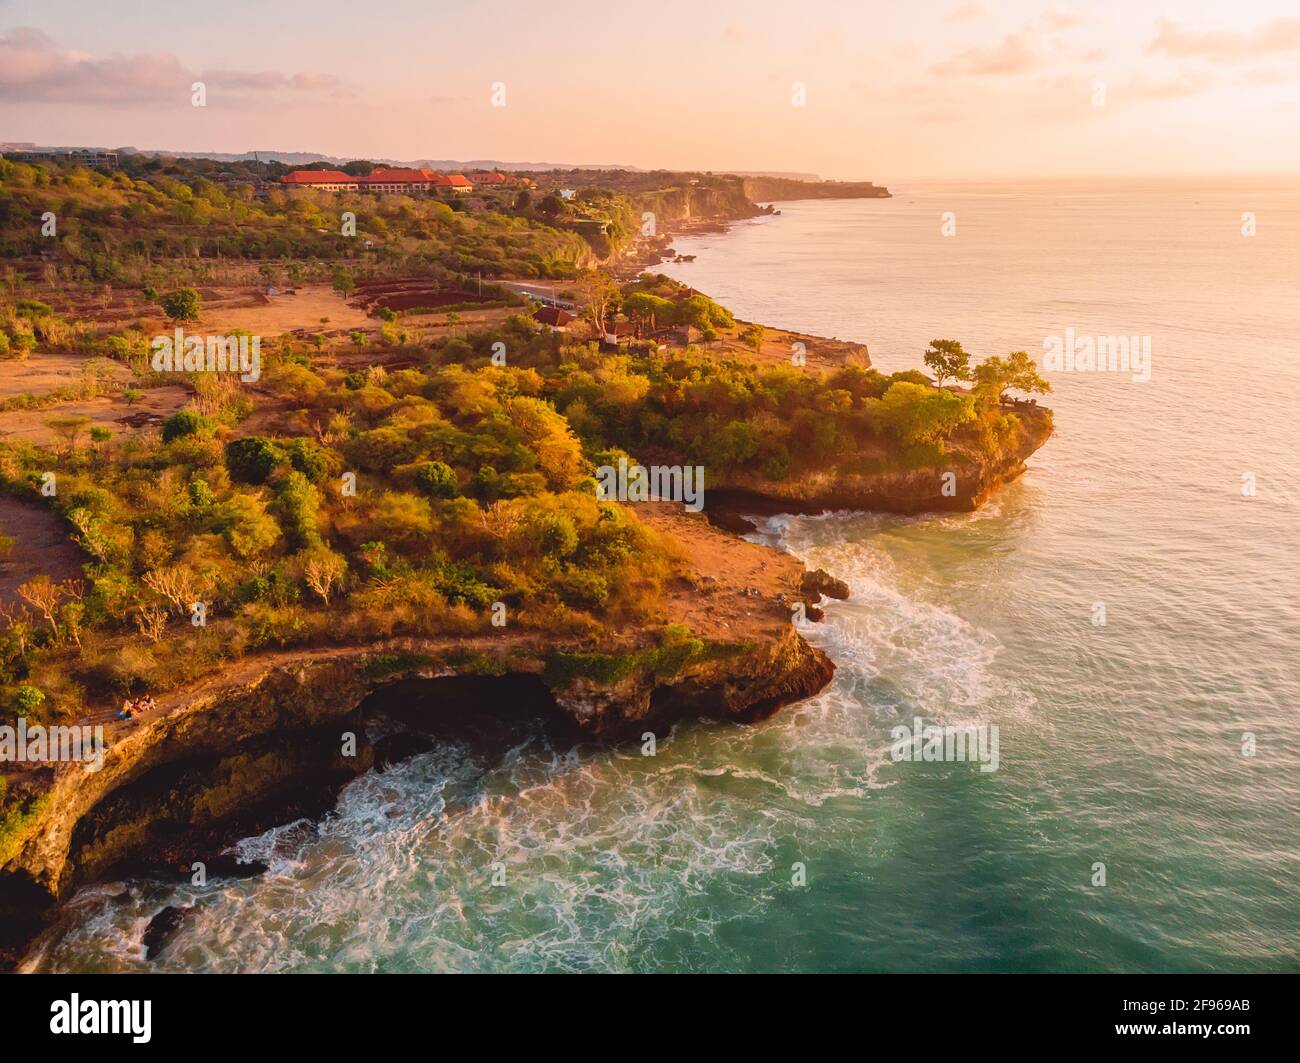 Luftaufnahme felsige Küste und warmer Sonnenuntergang. Drohne auf der Insel  Bali Stockfotografie - Alamy